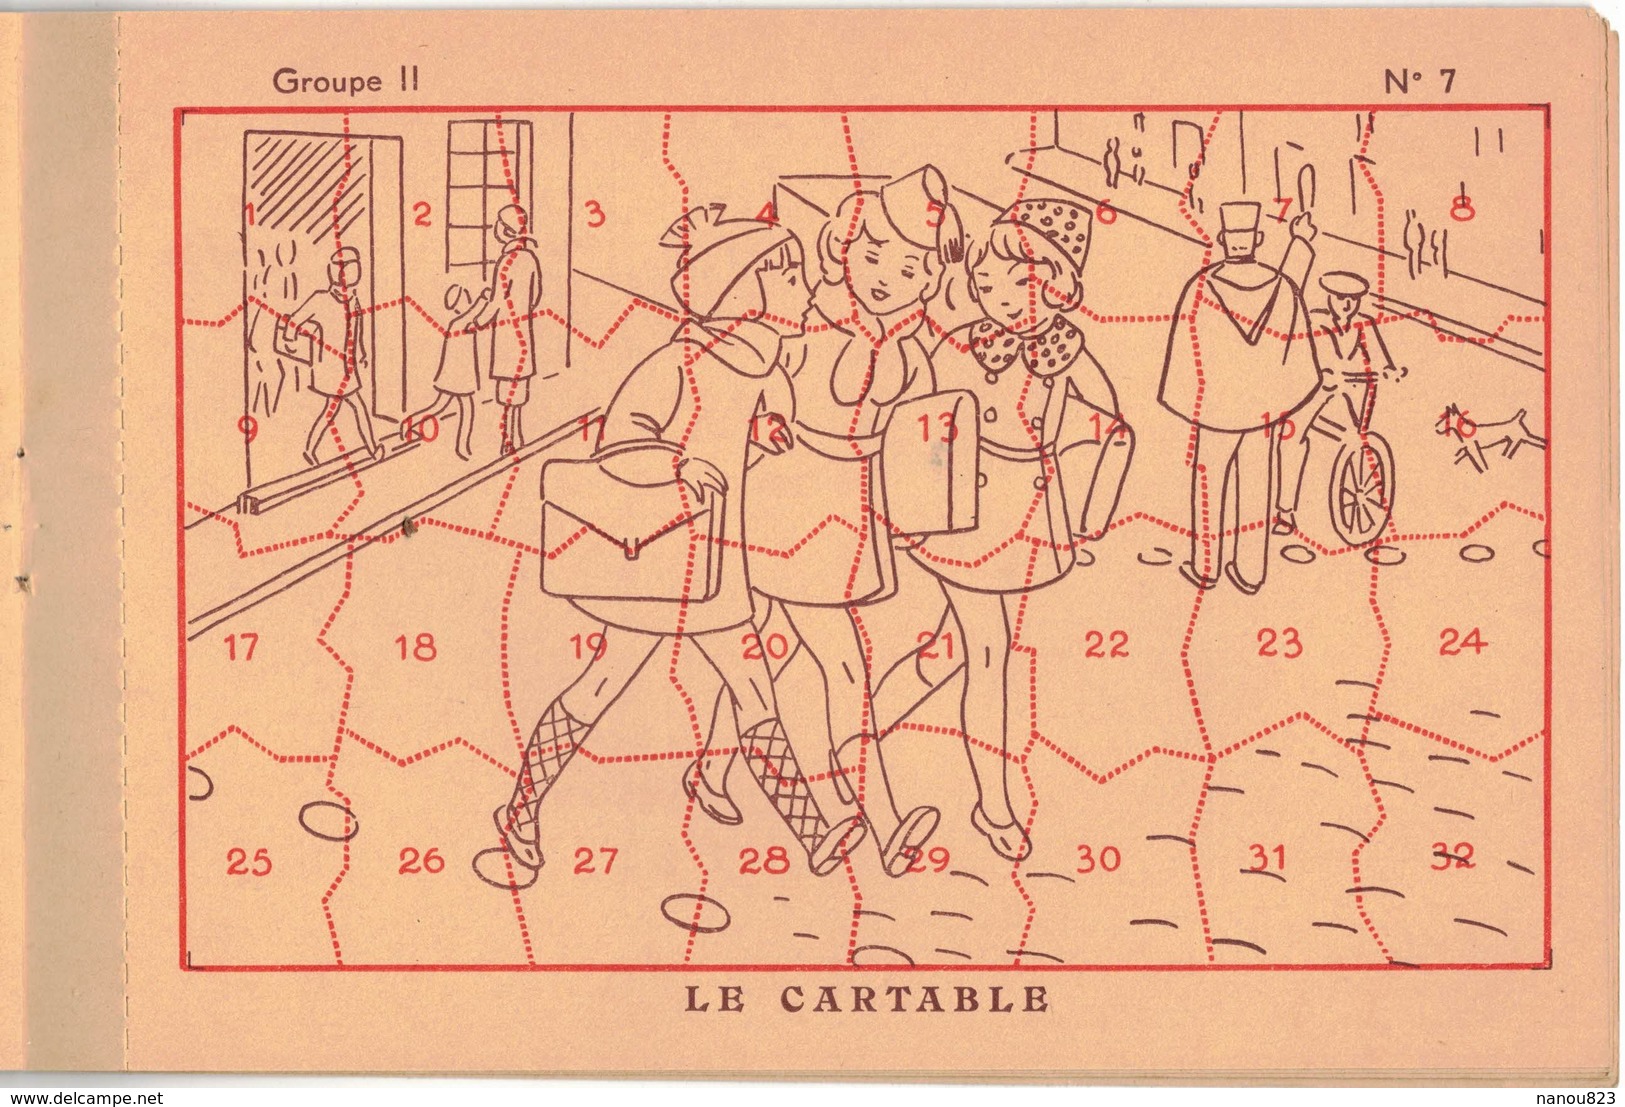 ANNEE 1937 - 1938 CHOCOLAT D'AIGUEBELLE : LES NOUVEAUX DECOUPAGES 2e Série D 10 PLANCHES COMPLET